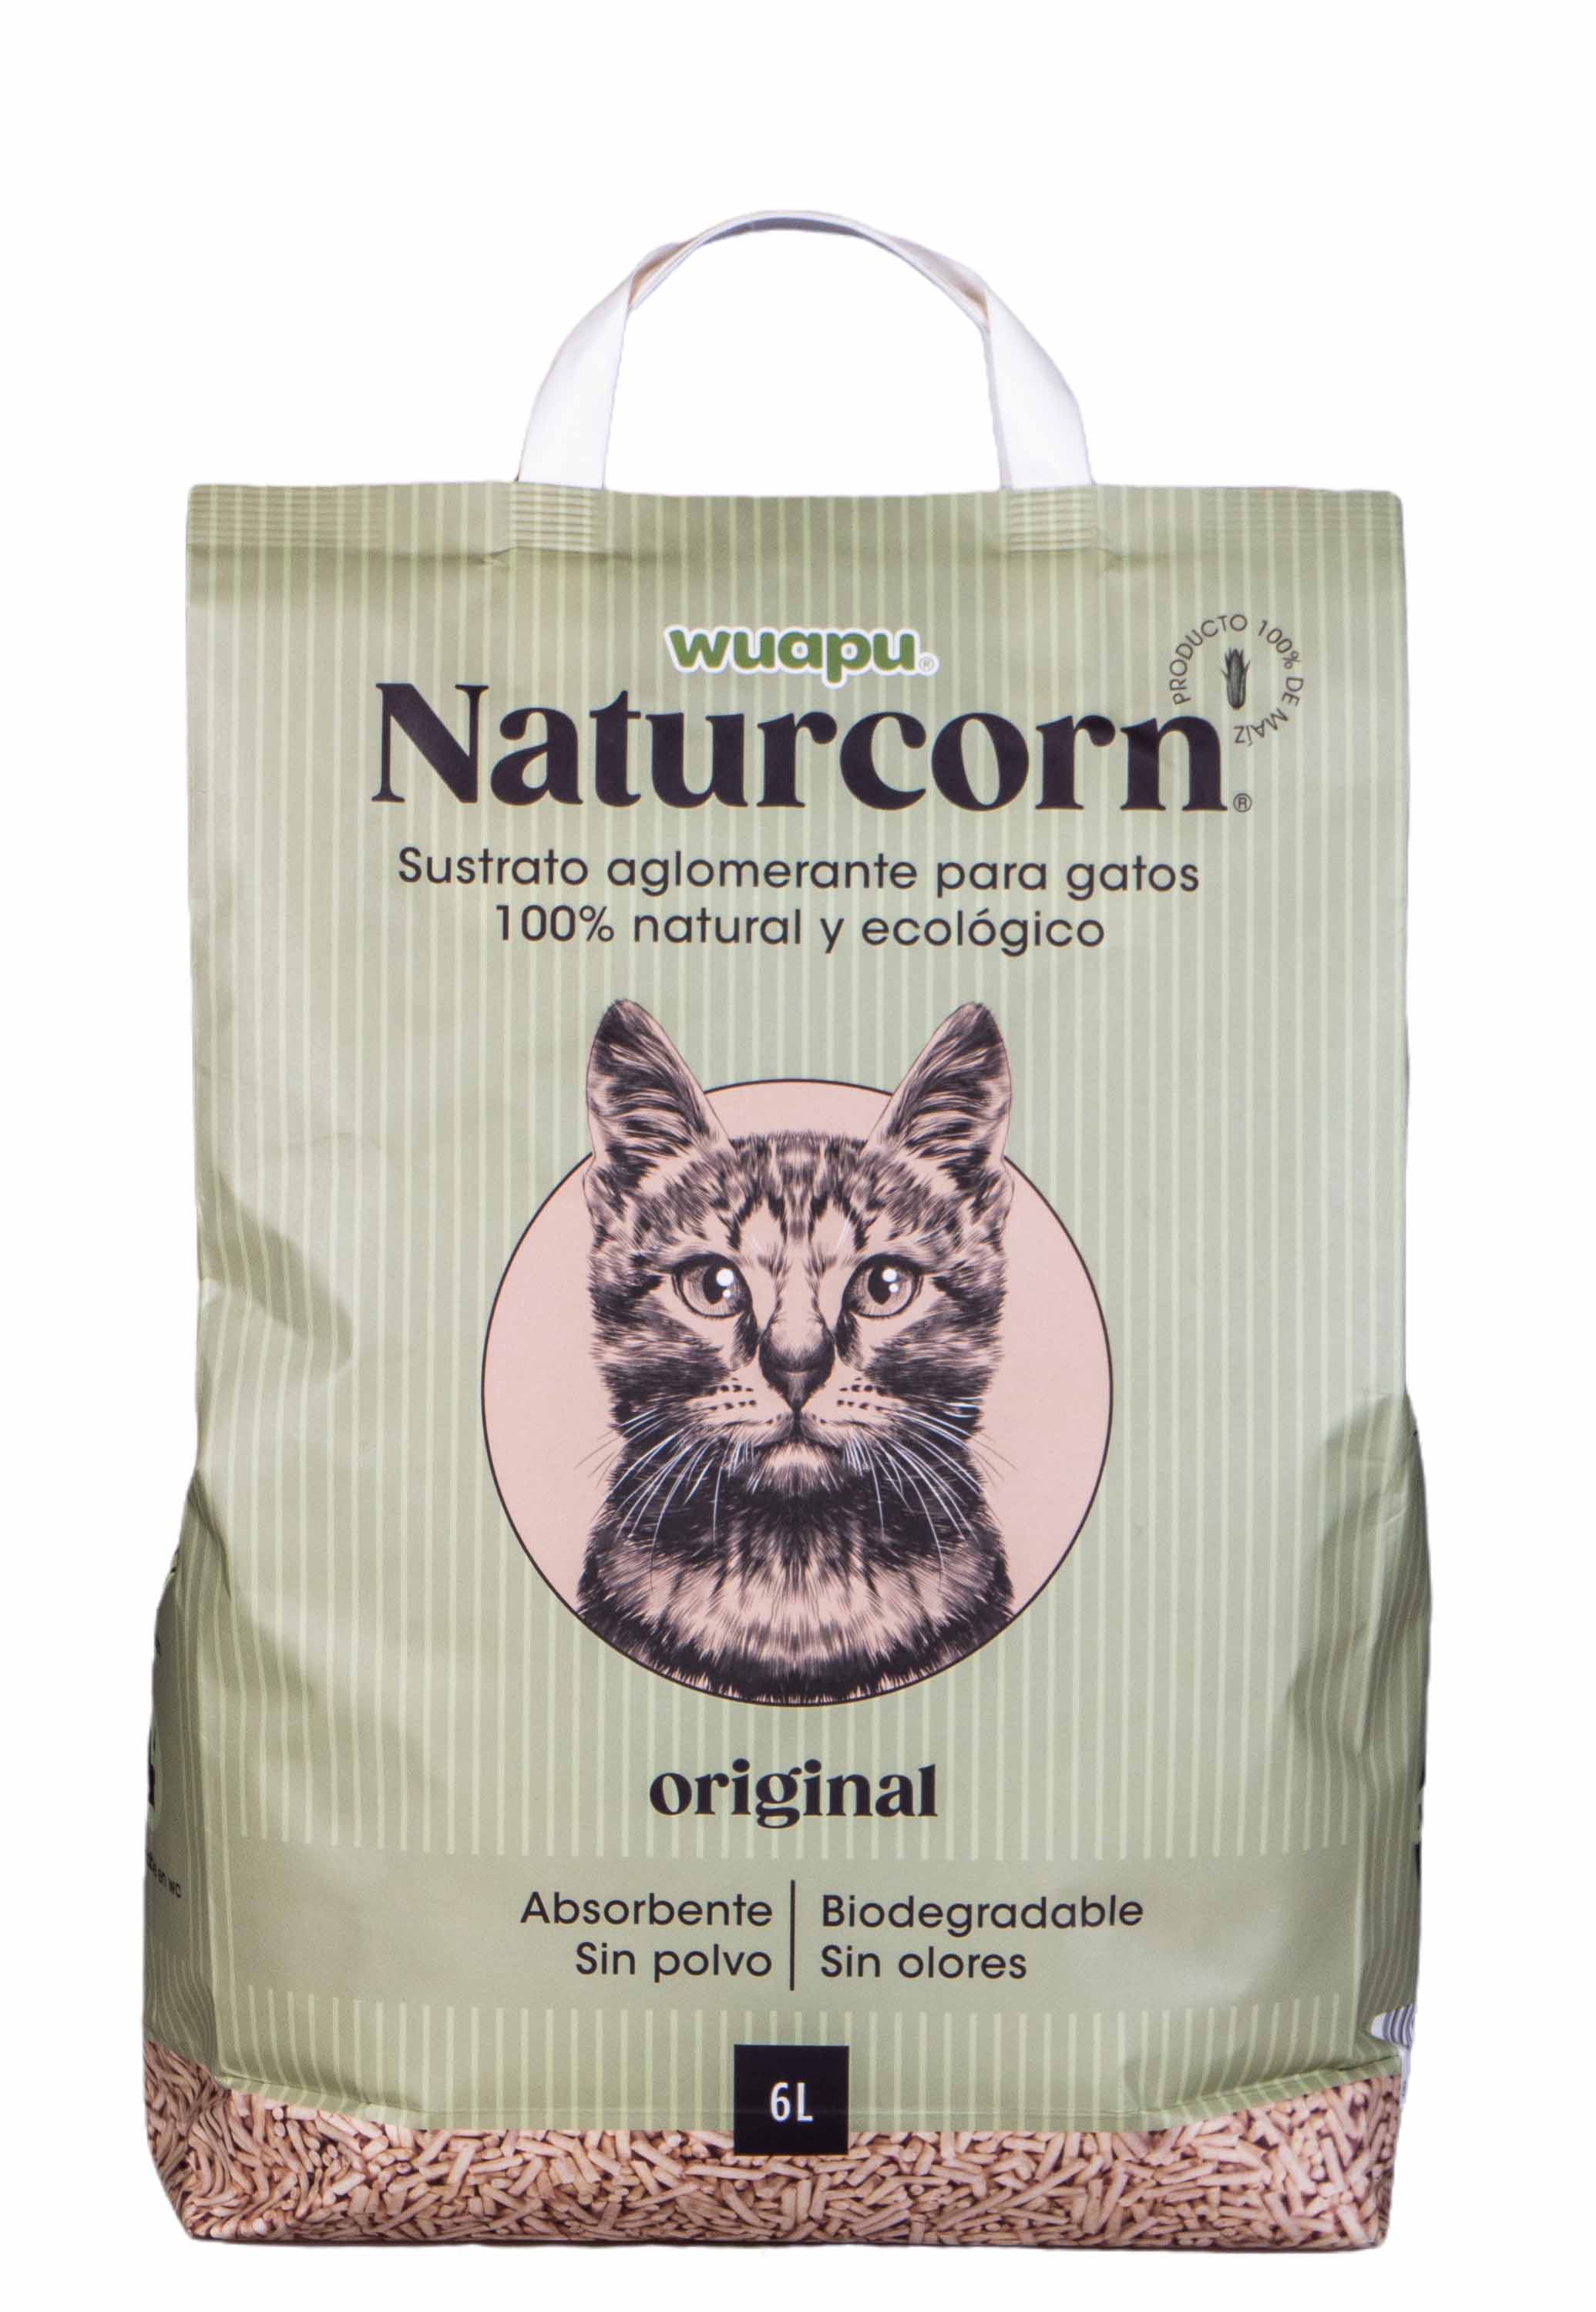 WUAPU Naturcorn Original 6 L Aglomerante para Gatos